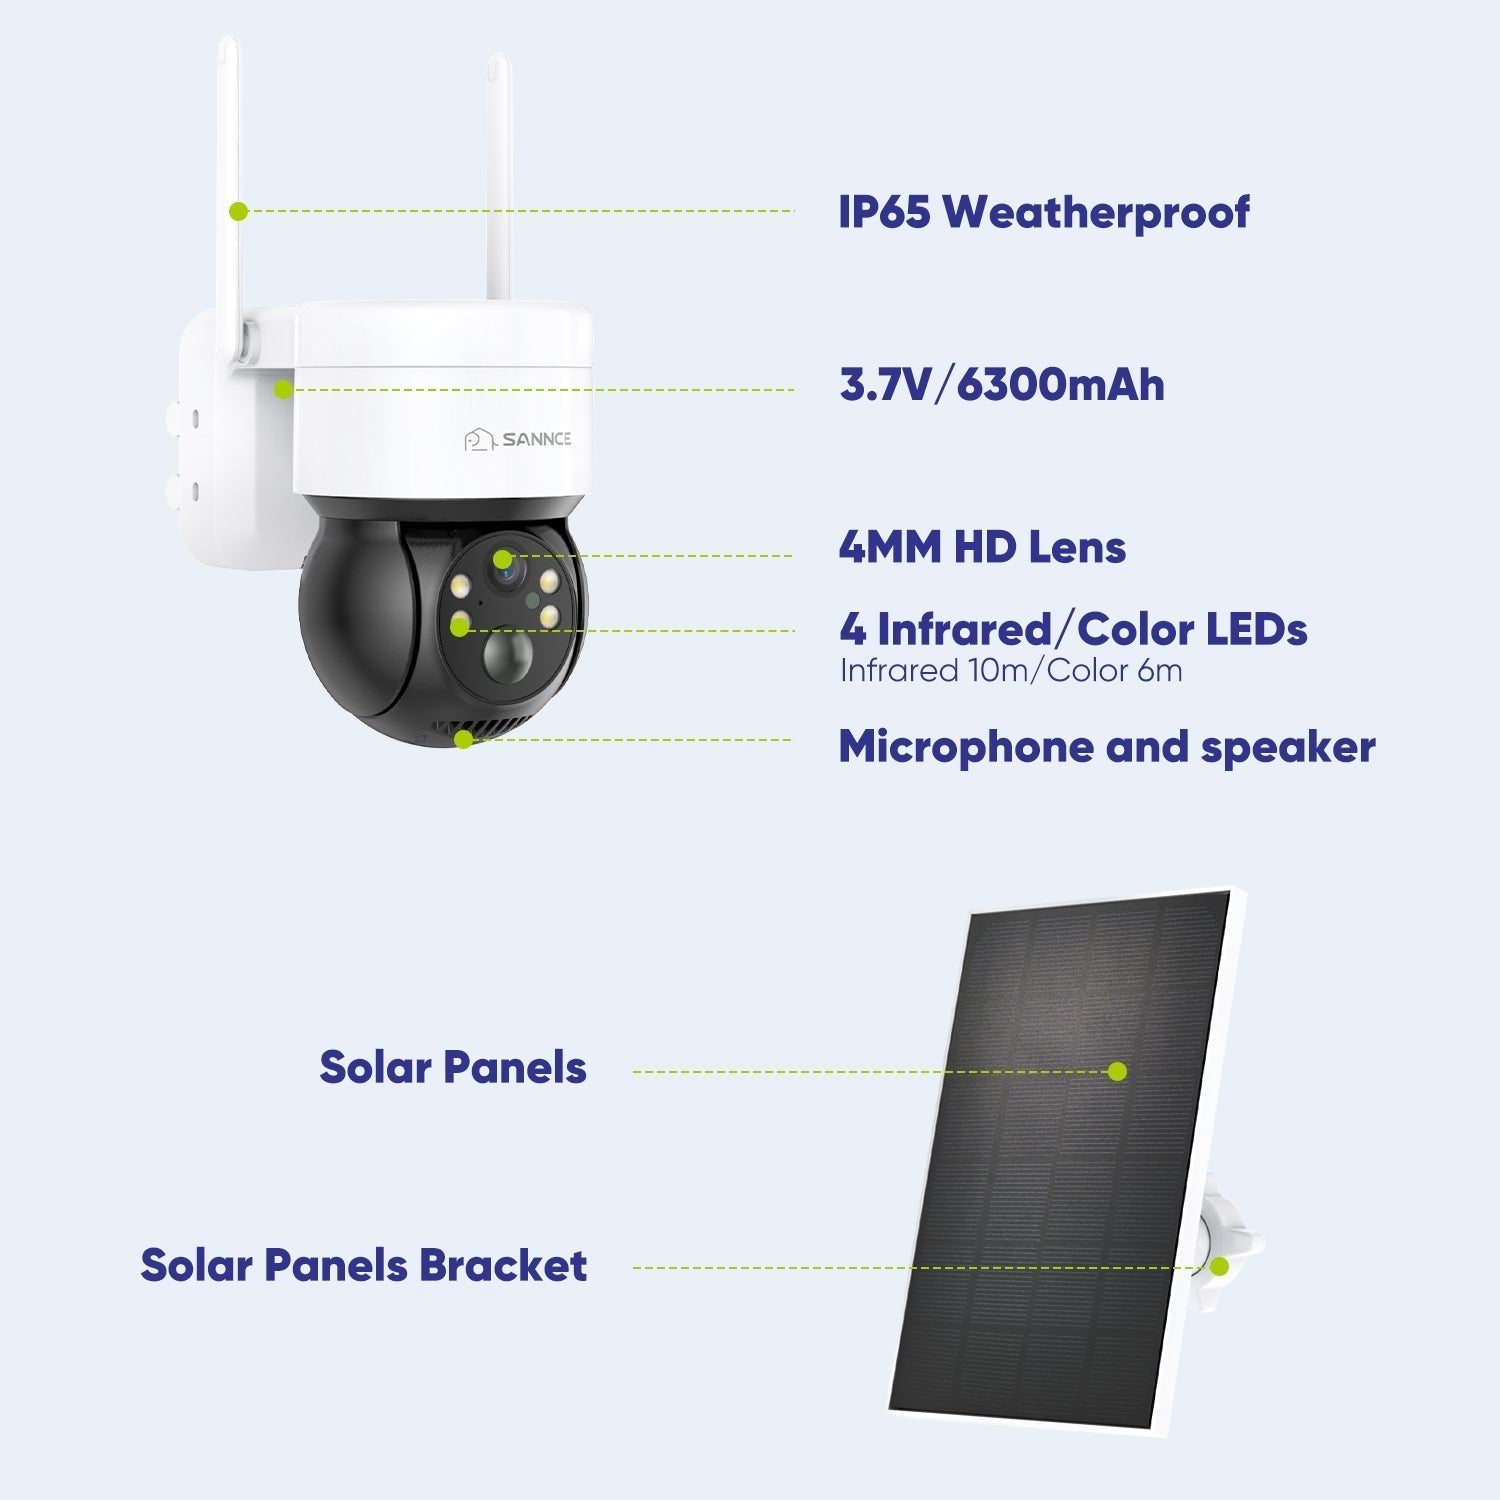 kit 4 caméras wifi sans fil solaire avec enregistreur vidéosurveillance